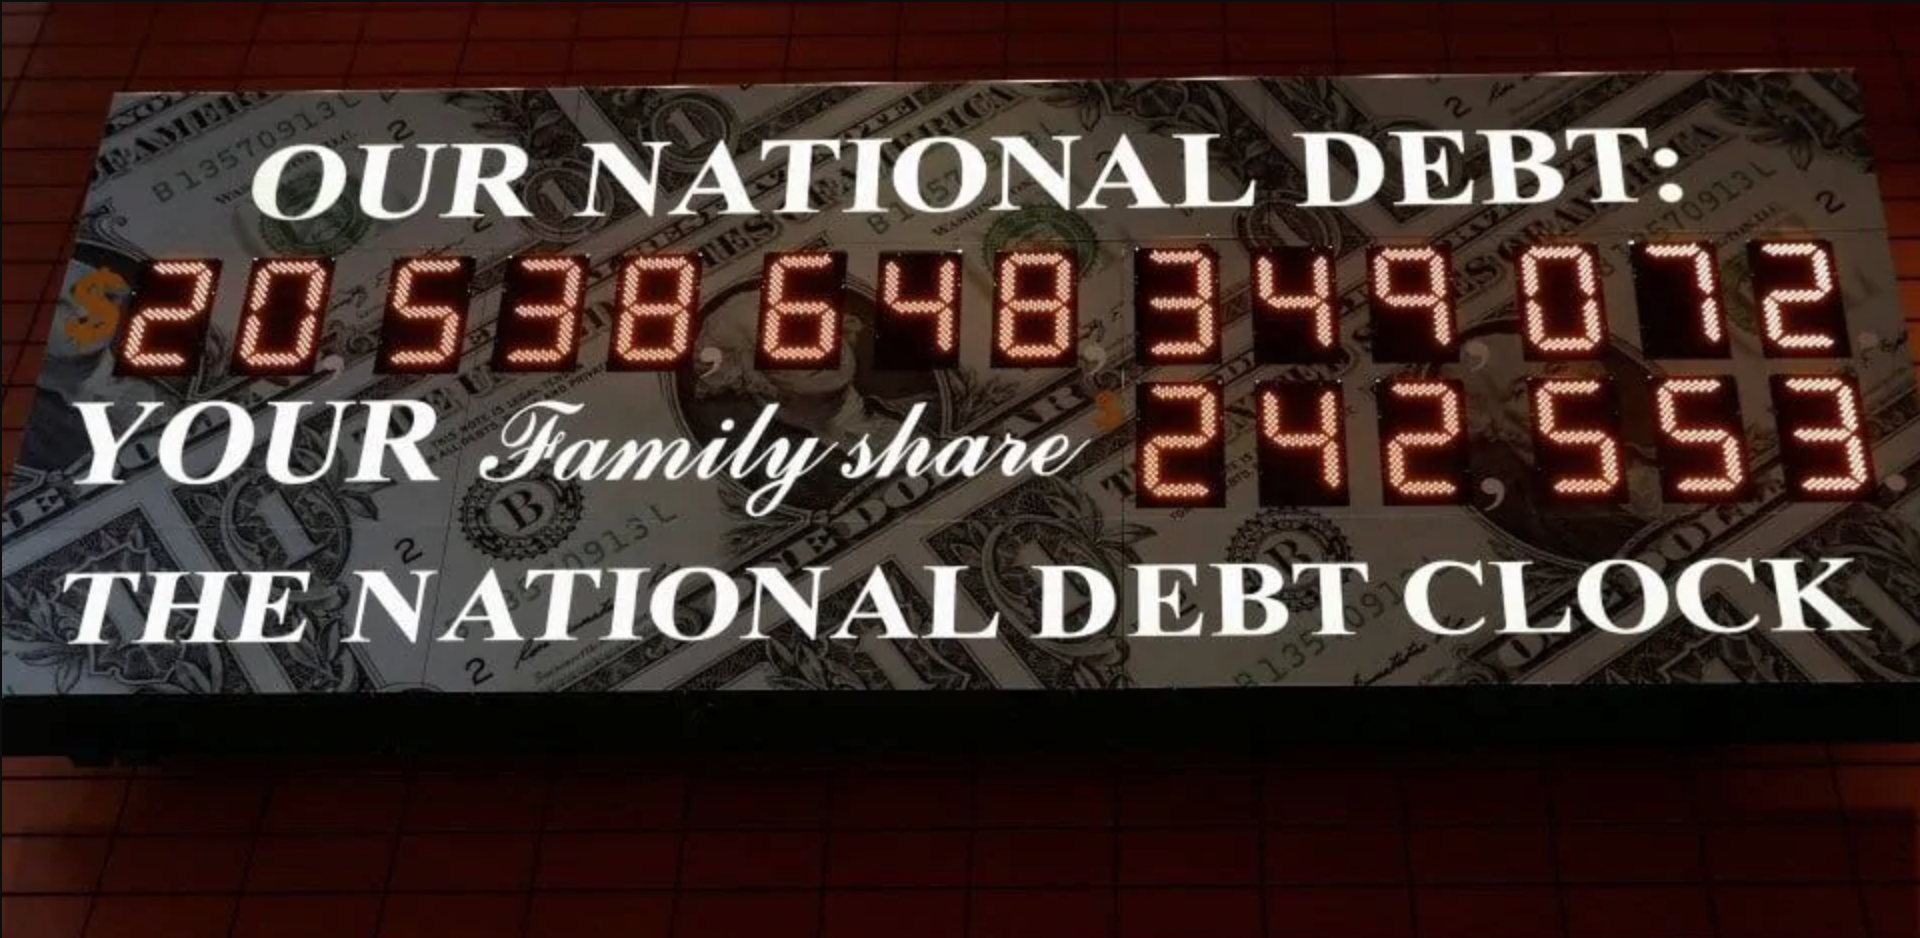 Счетчик долгов в реальном времени. Счётчик национального долга США. Внешний долг США табло. Табло госдолга США. Табло национального долга США.